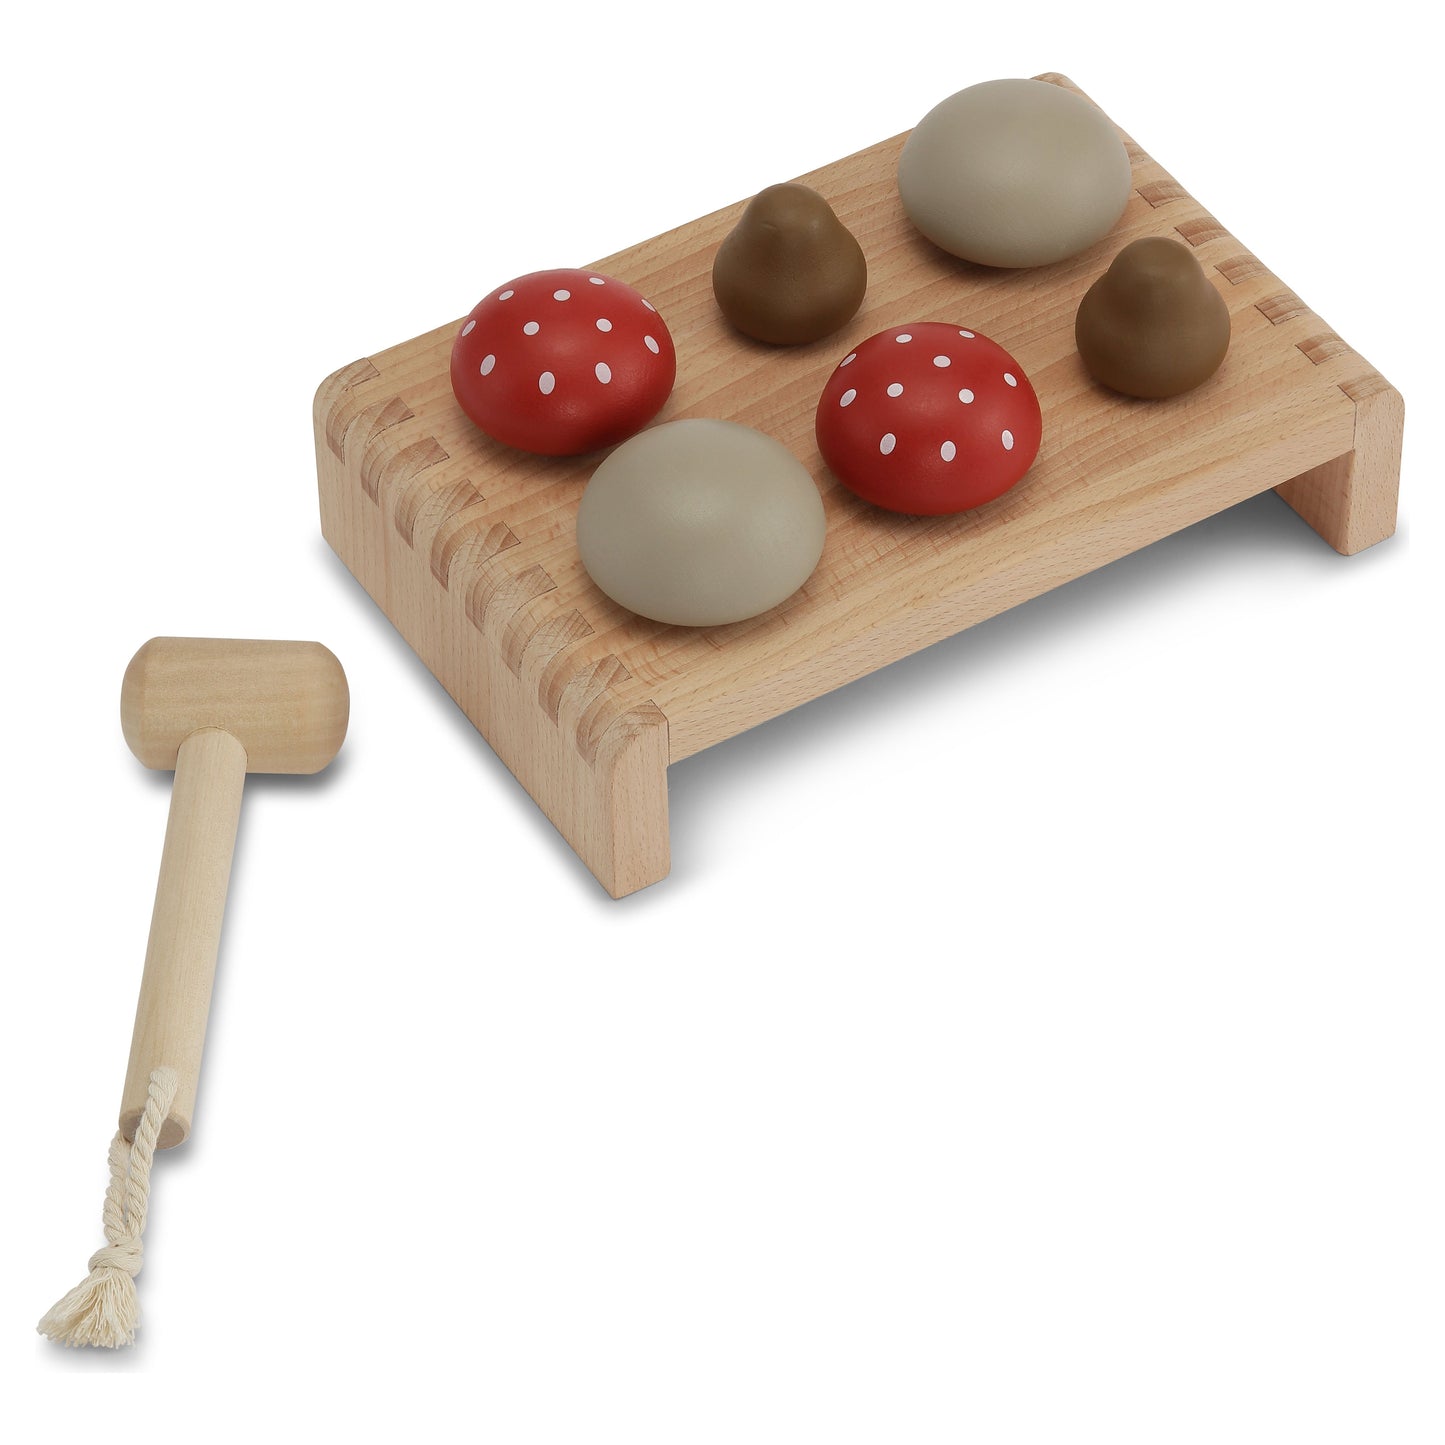 Mushroom Hammer Board - Multi